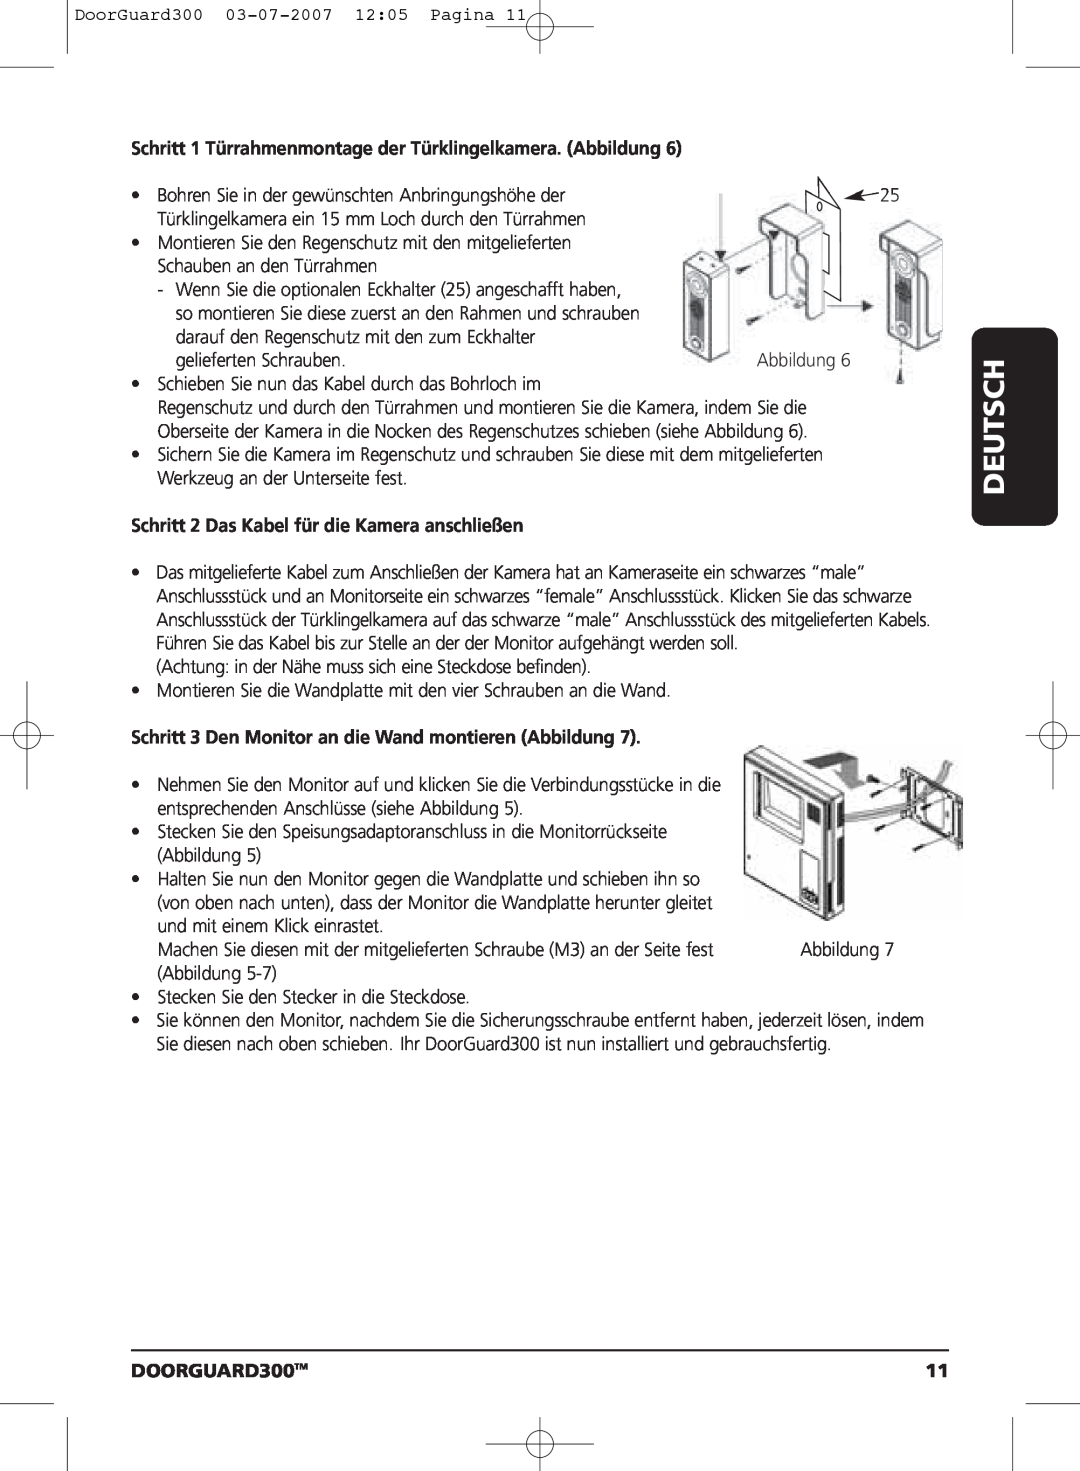 Marmitek DOORGUARD300TM user manual Schritt 1 Türrahmenmontage der Türklingelkamera. Abbildung, Deutsch 